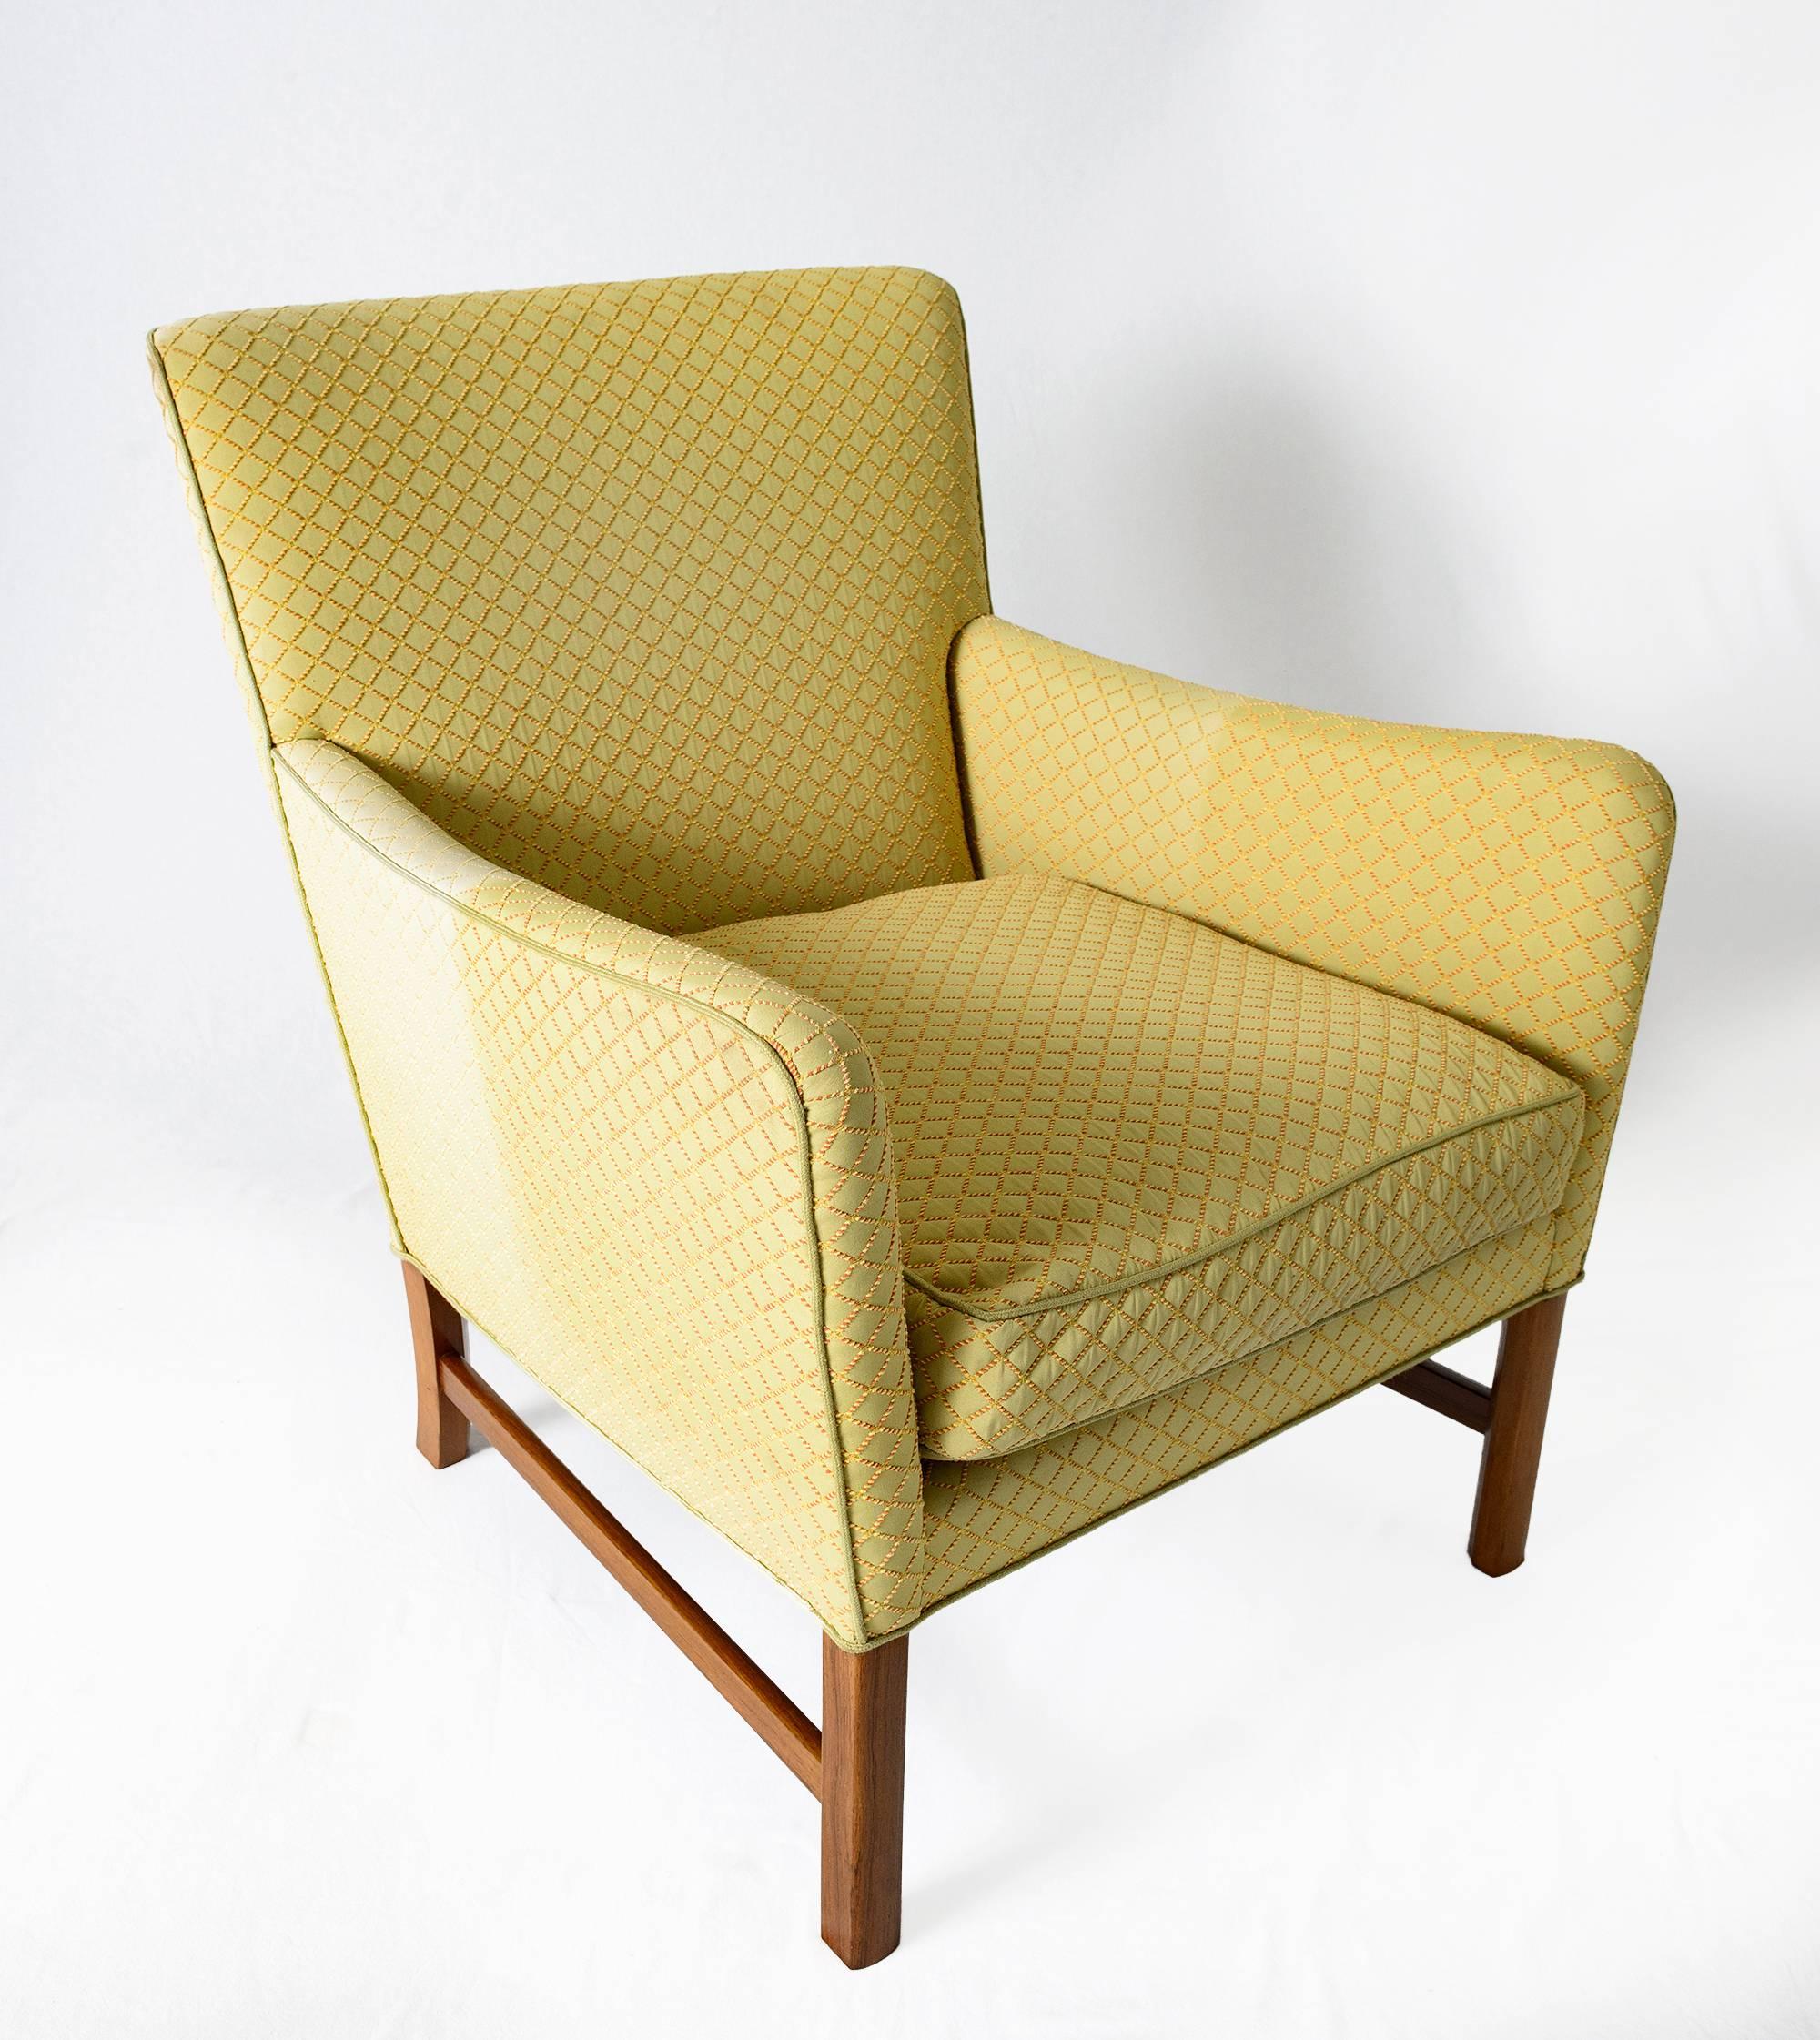 Chaise longue Ole Wanscher conçue en 1960 et produite par A. J. Iversen.